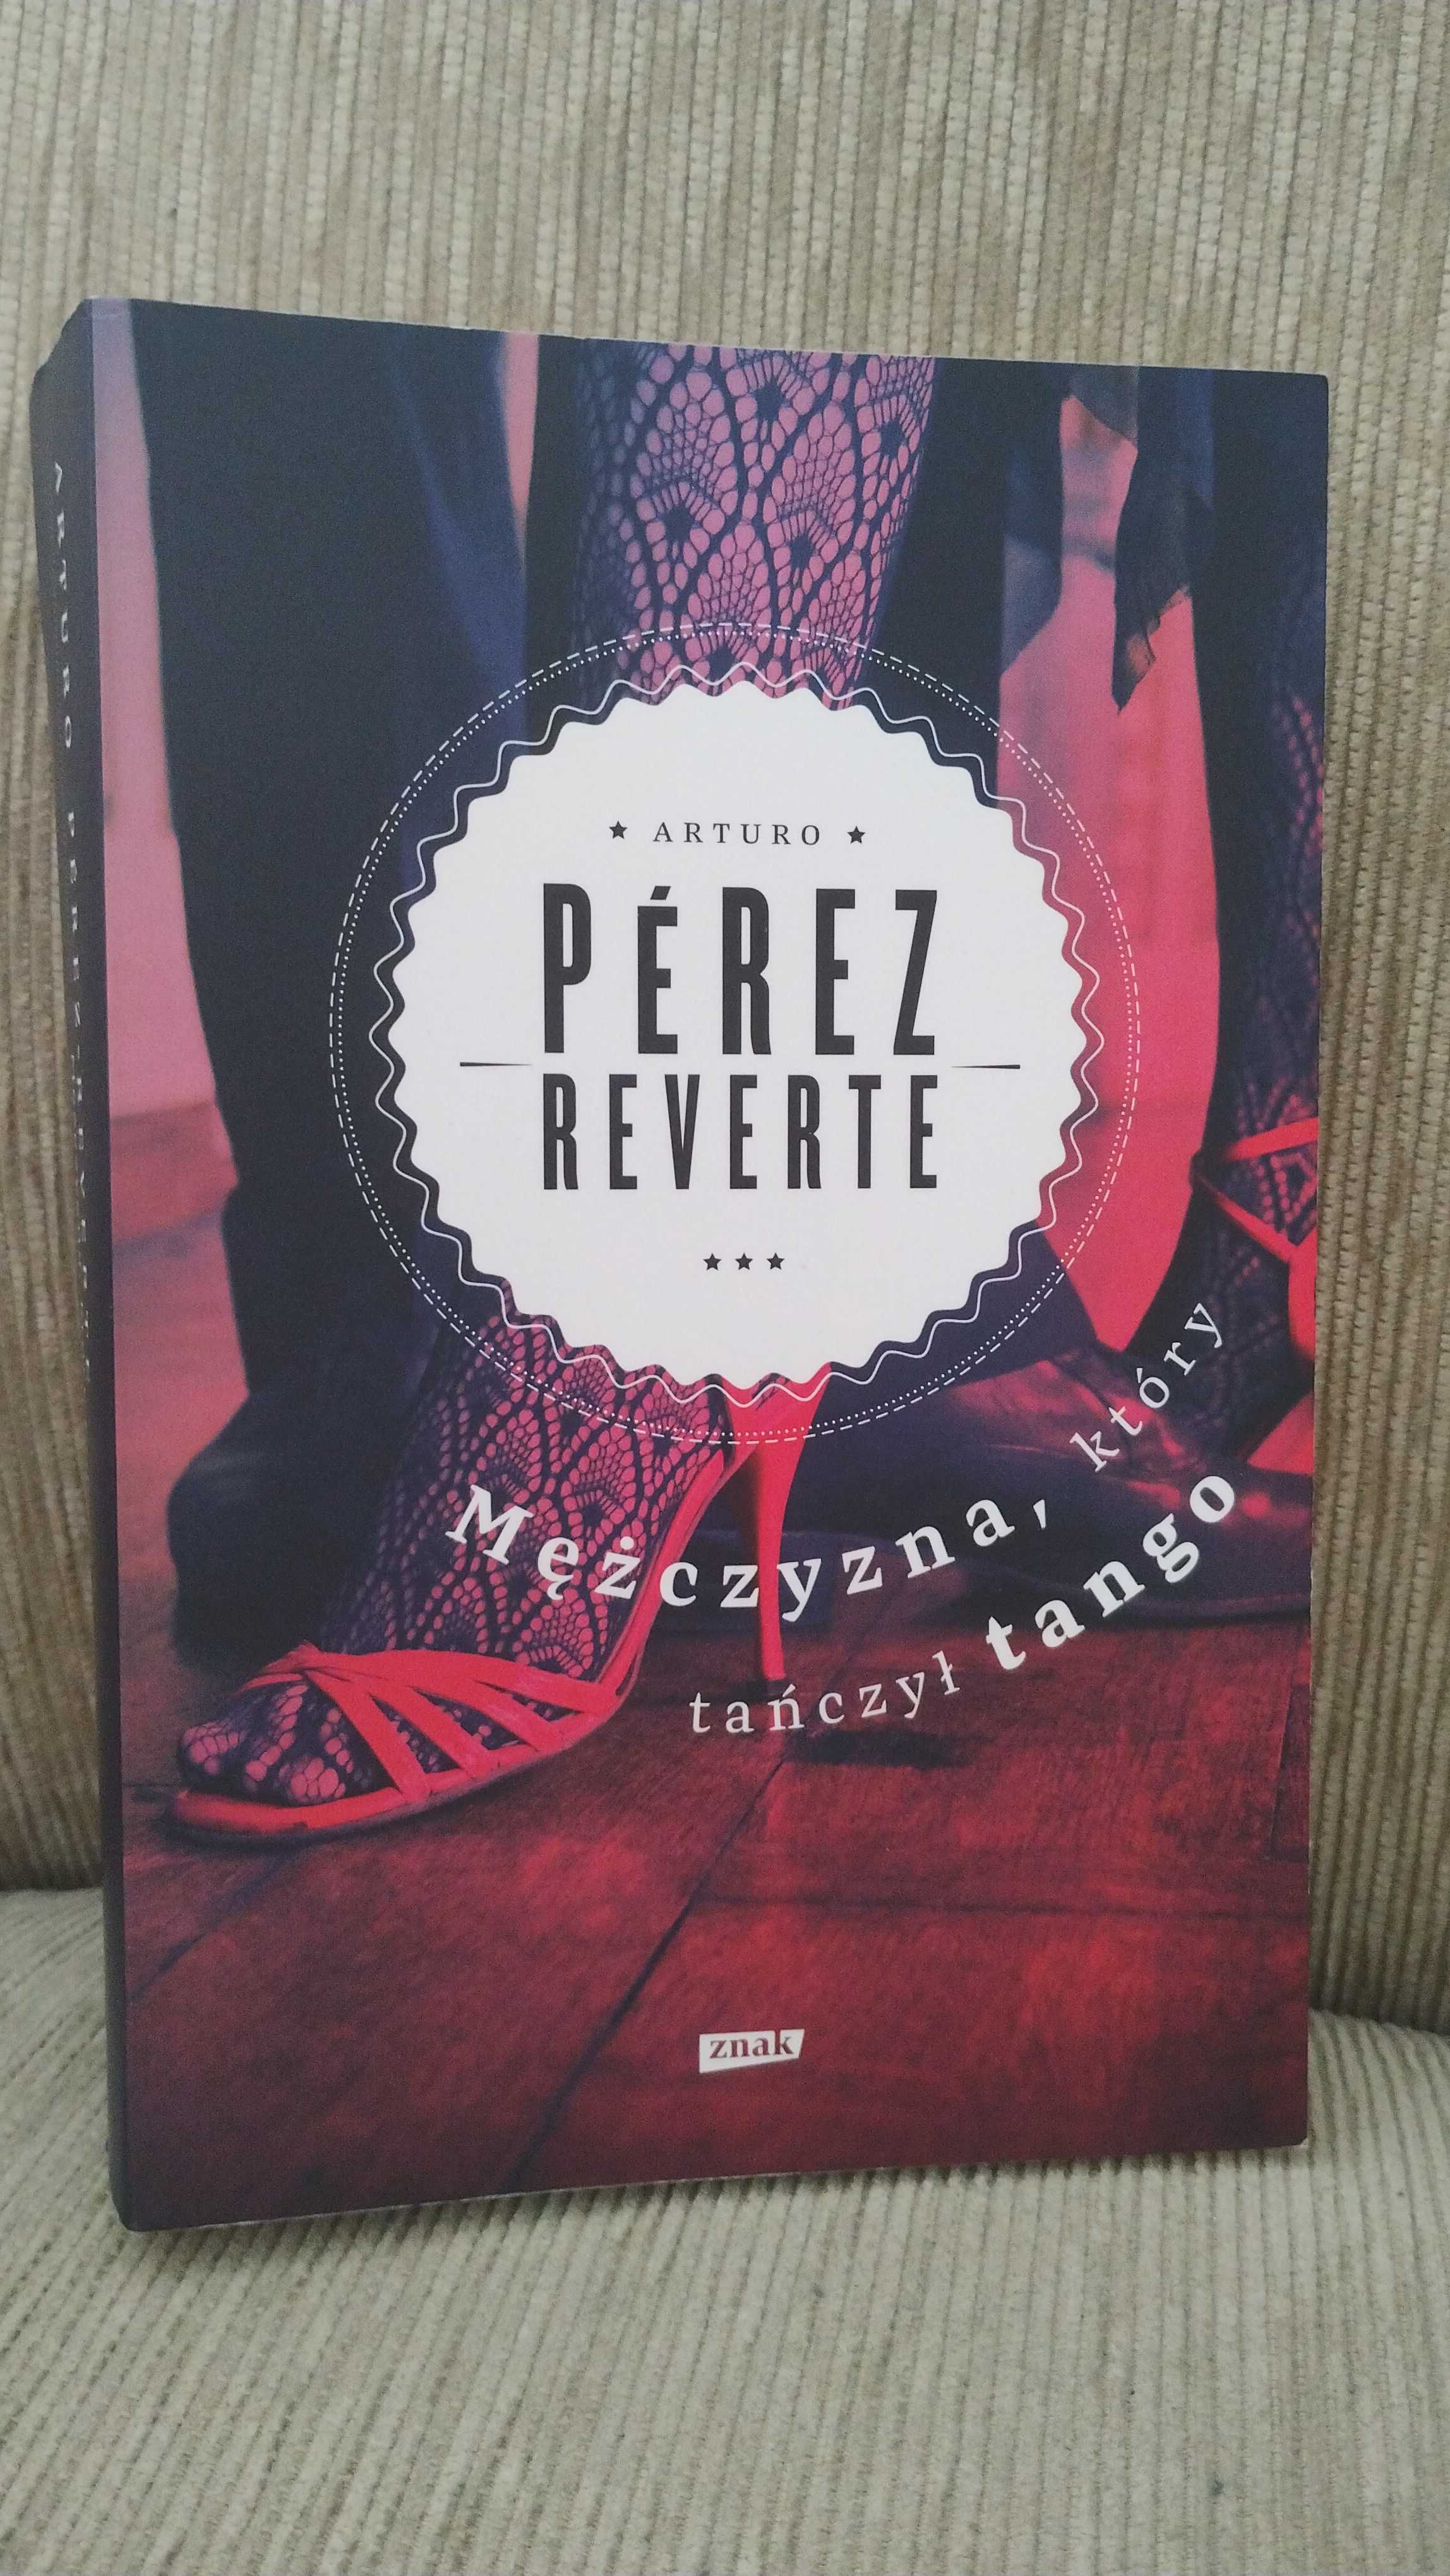 "Mężczyzna, który tańczył tango" Arturo Perez - Reverte